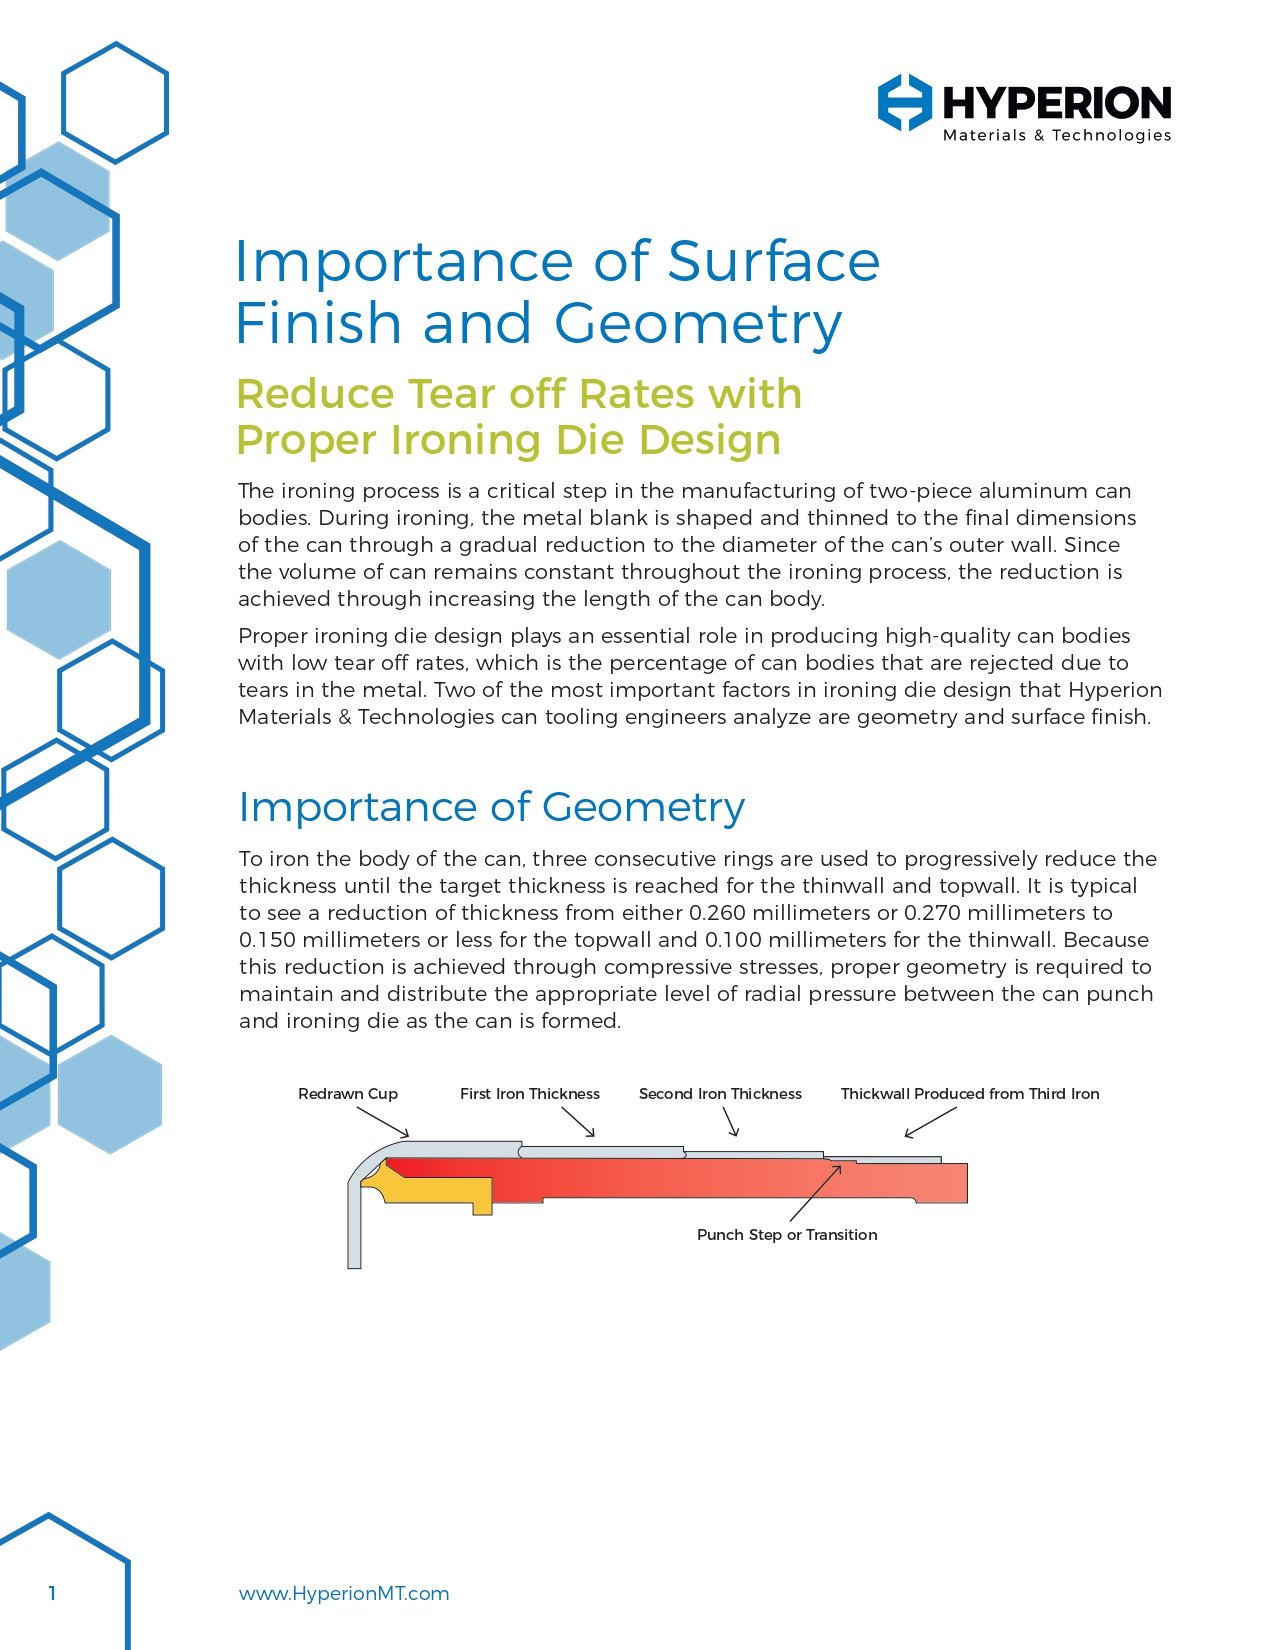 Bedeutung von Oberflächengüte und Geometrie: Reduzieren Sie die Abreißrate mit der richtigen Konstruktion von Ironing Dies